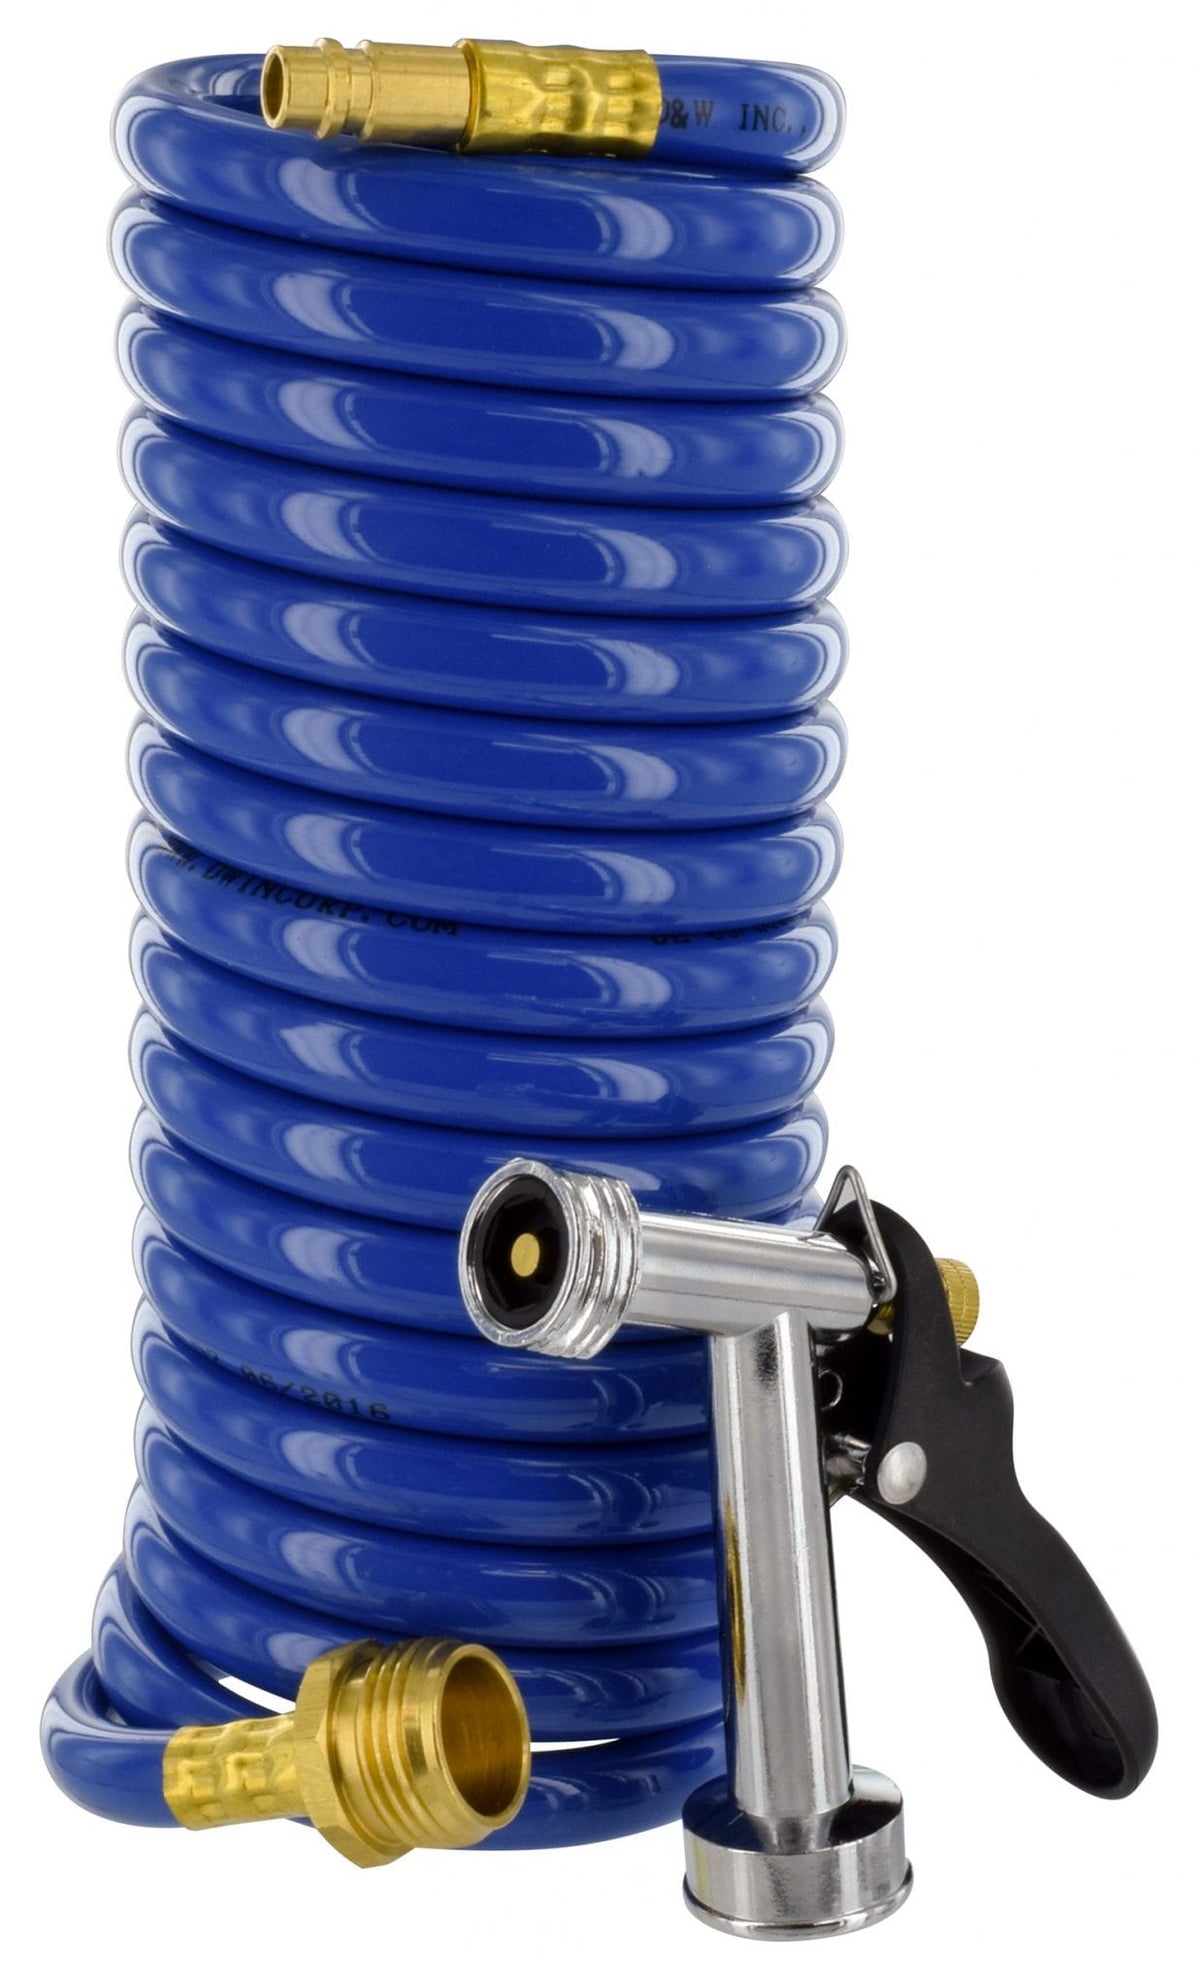 RV Spray Away coiled hose